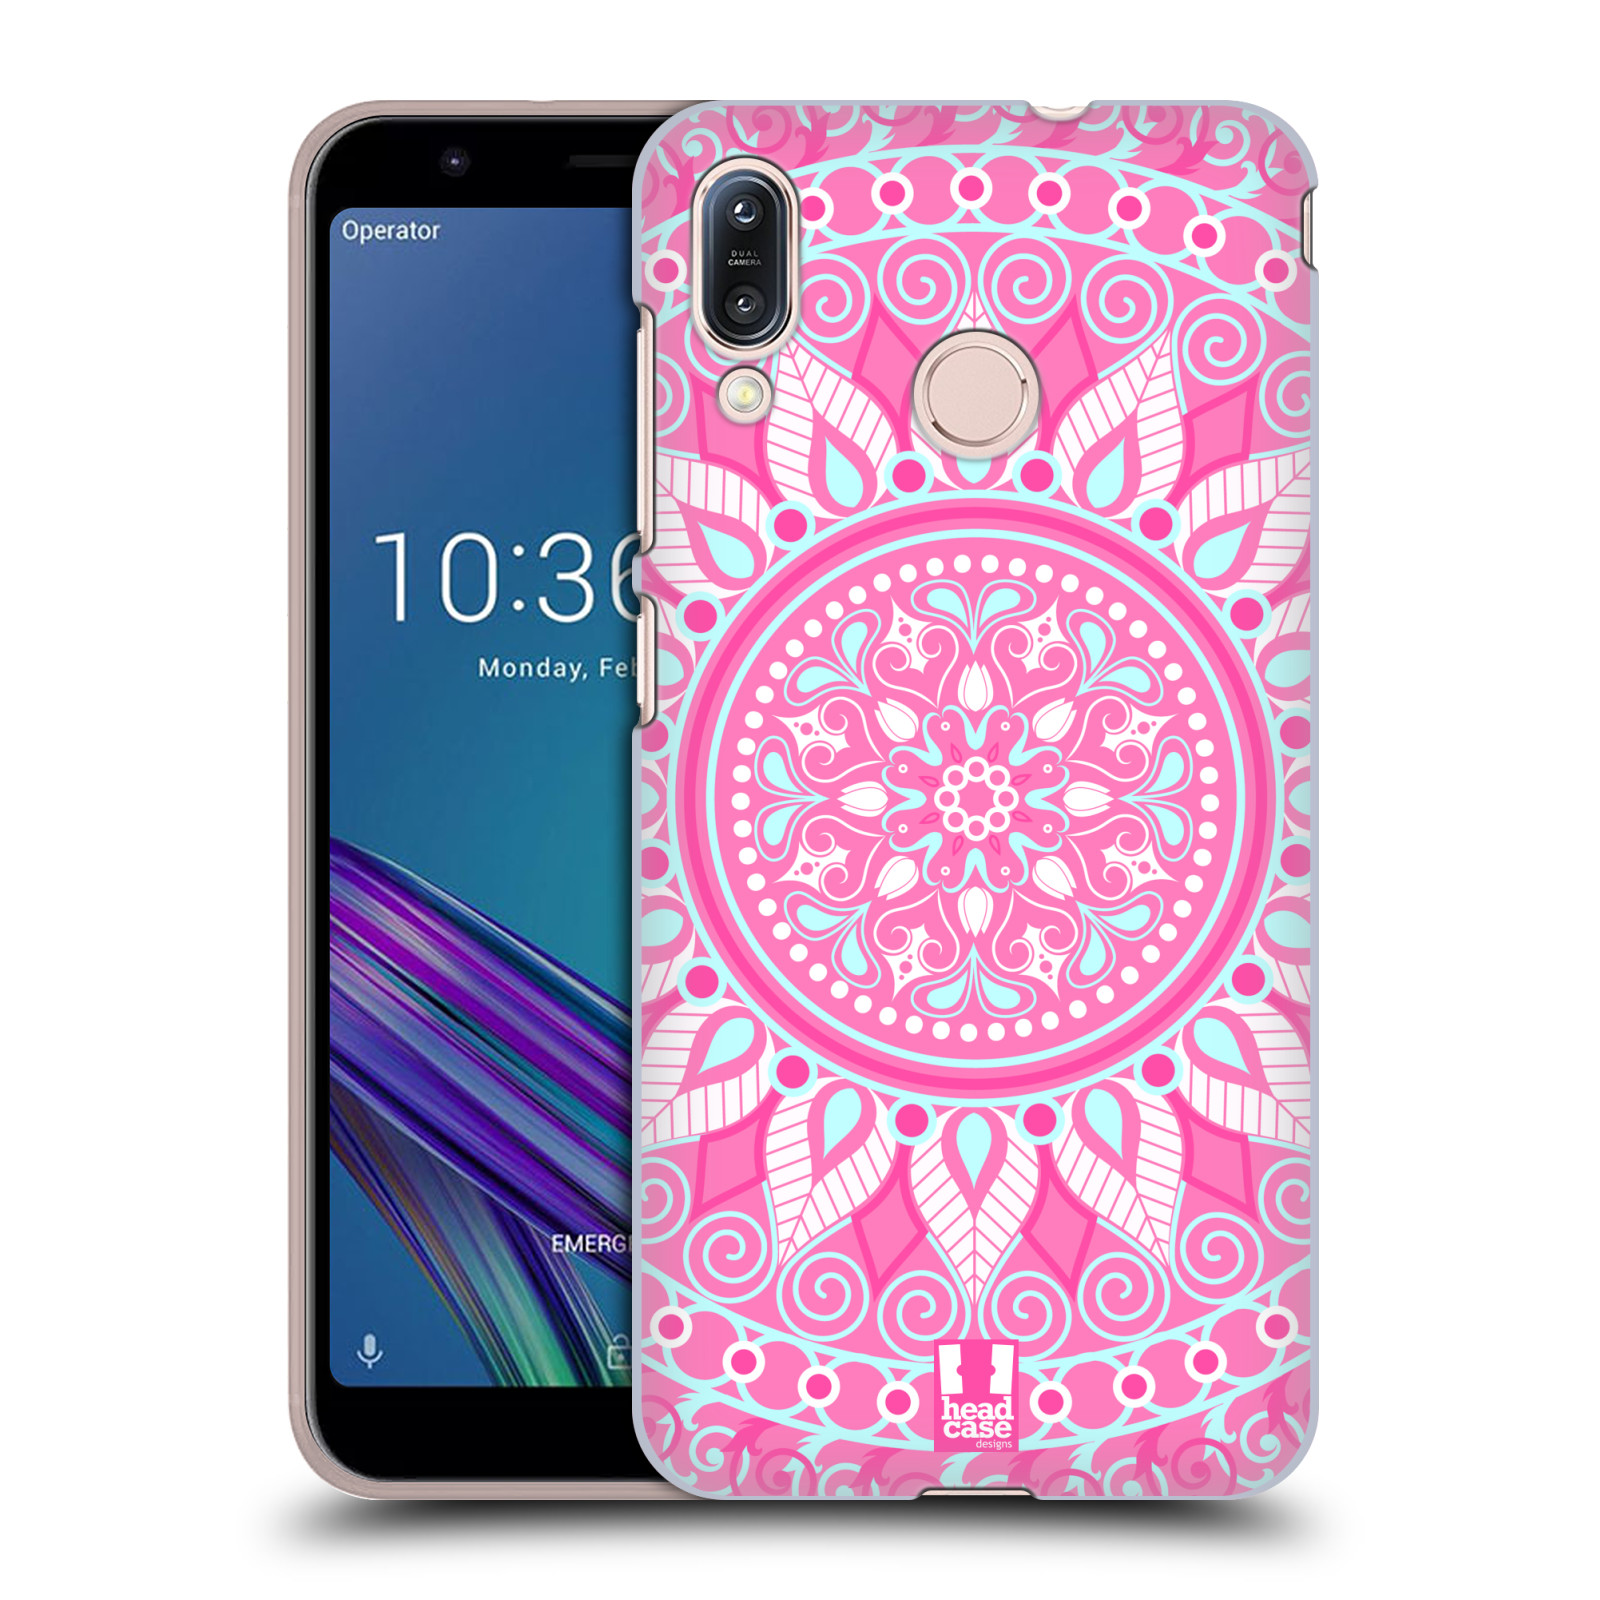 Pouzdro na mobil Asus Zenfone Max M1 (ZB555KL) - HEAD CASE - vzor Indie Mandala slunce barevný motiv RŮŽOVÁ